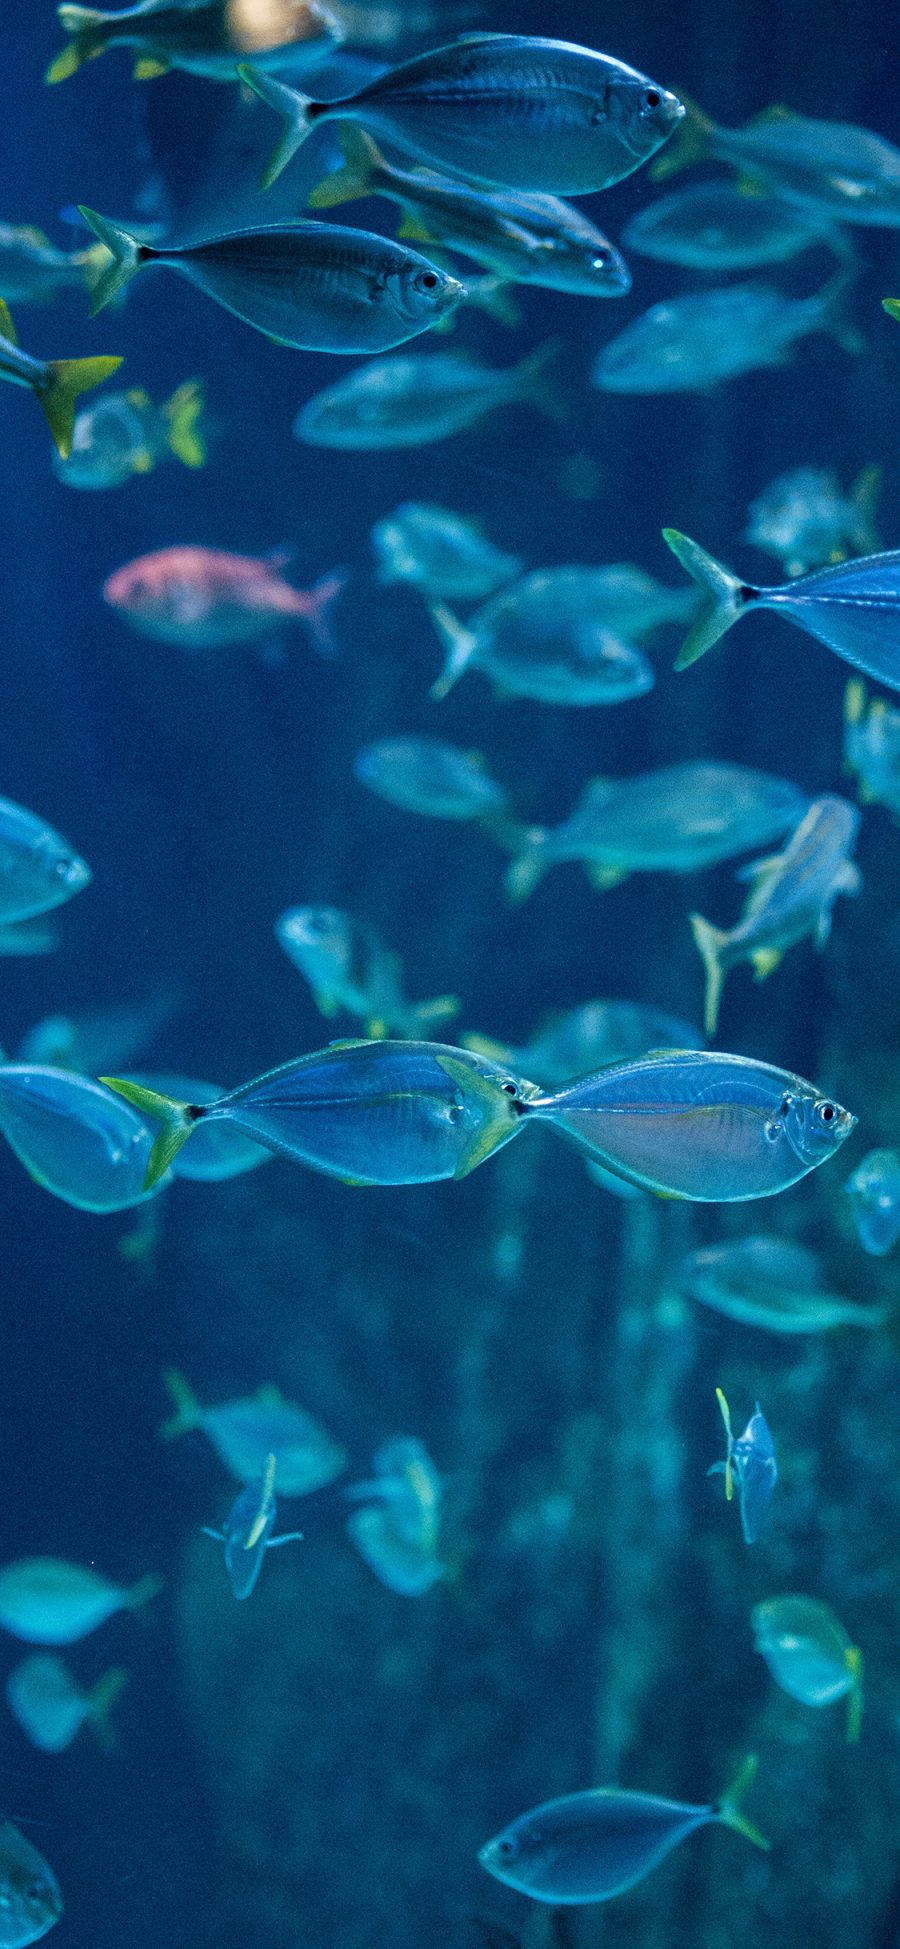 [2436×1125]鱼群 海洋生物 种群 蓝色 苹果手机壁纸图片